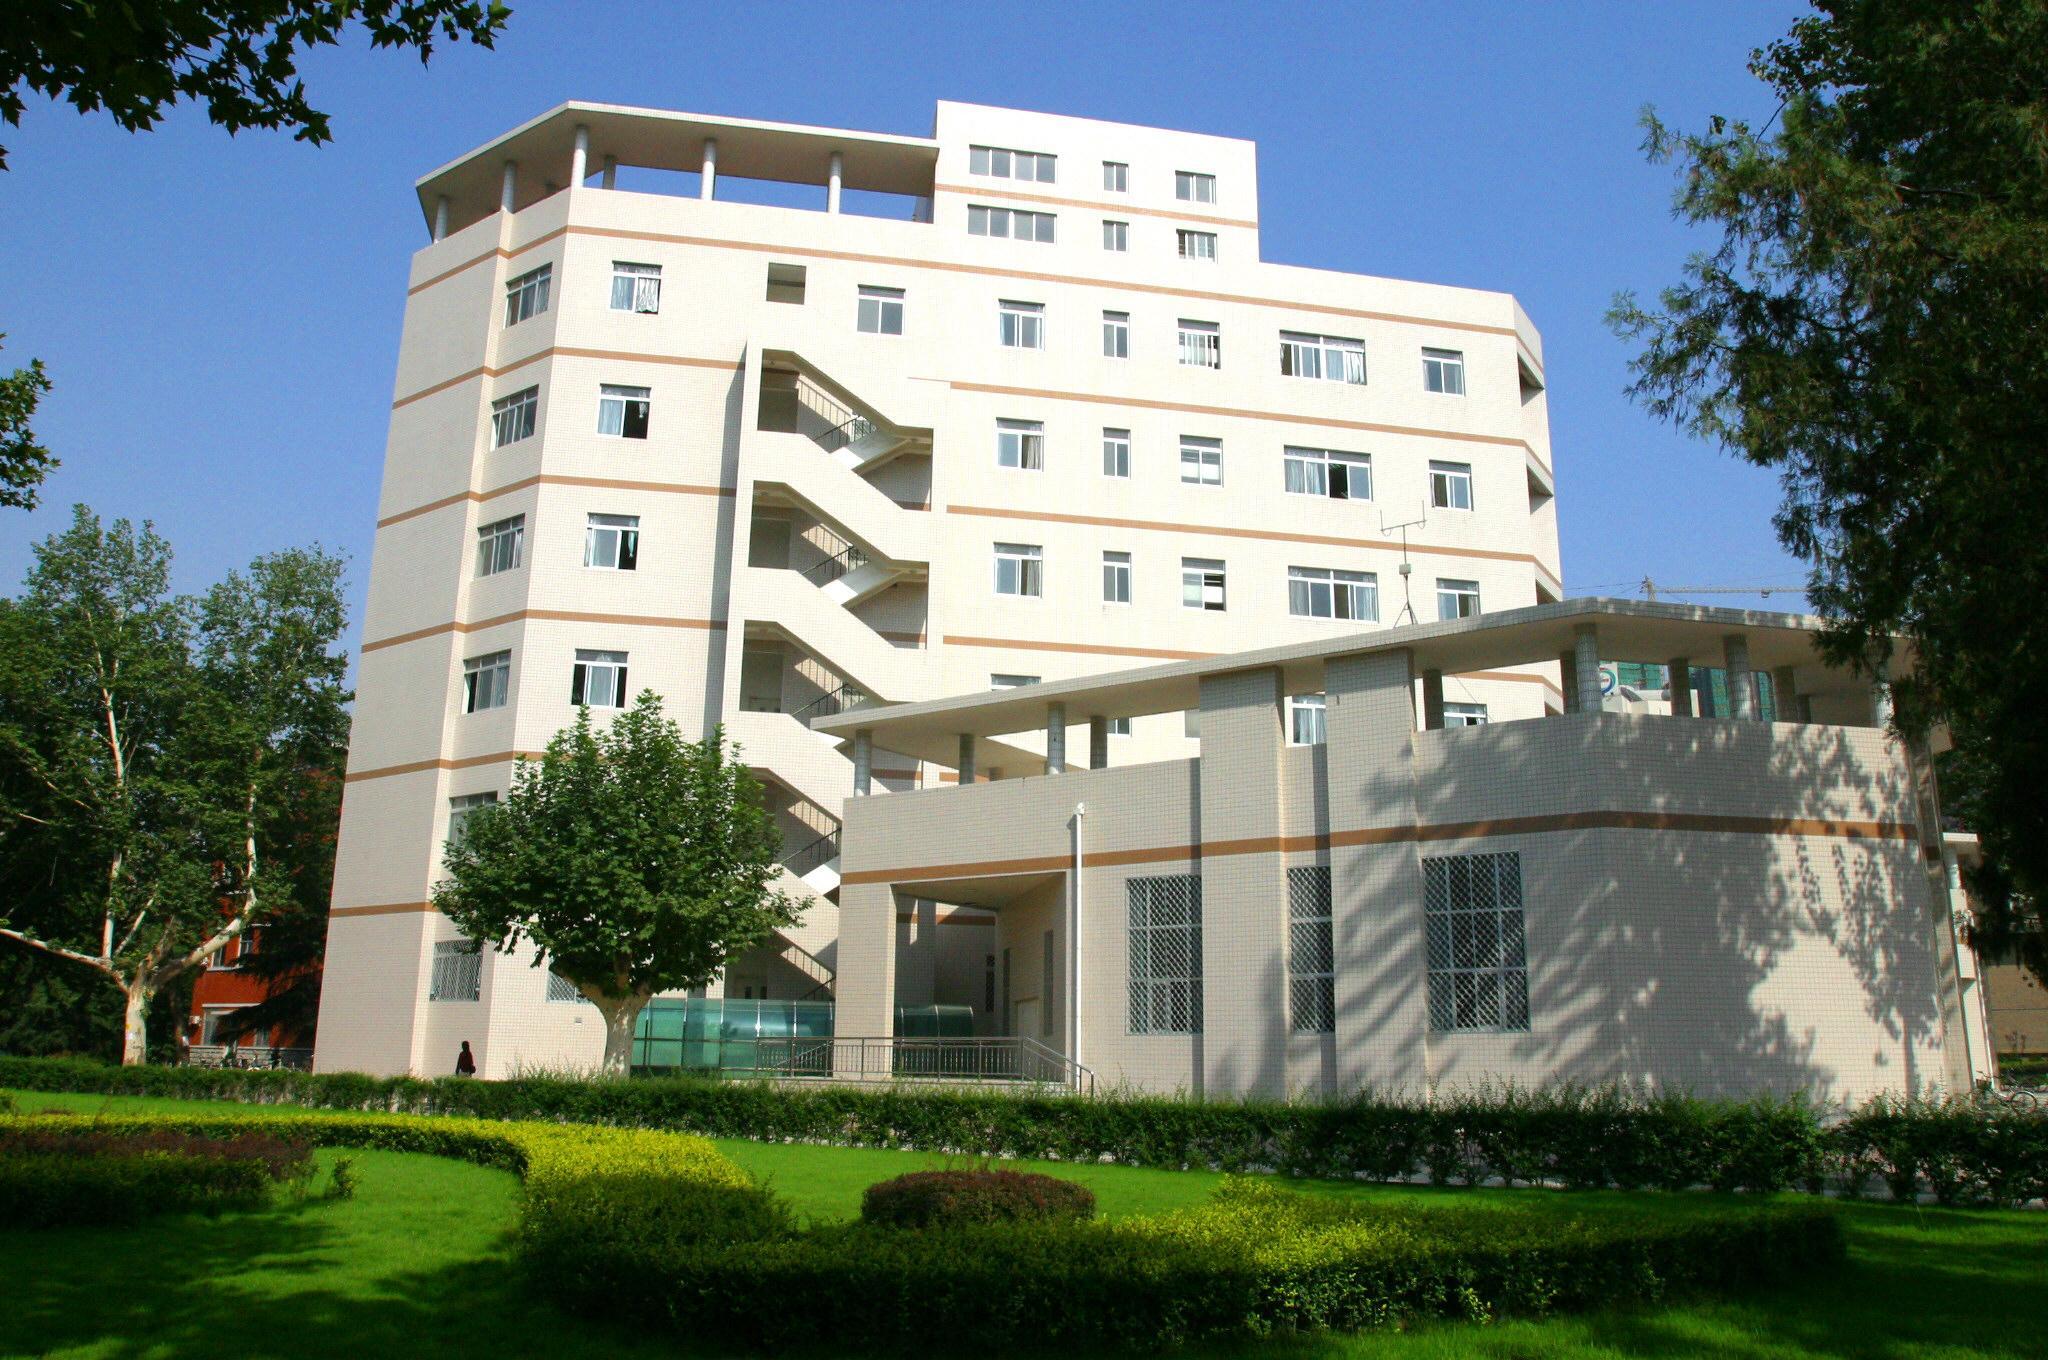 西安電子科技大學國家大學科技園